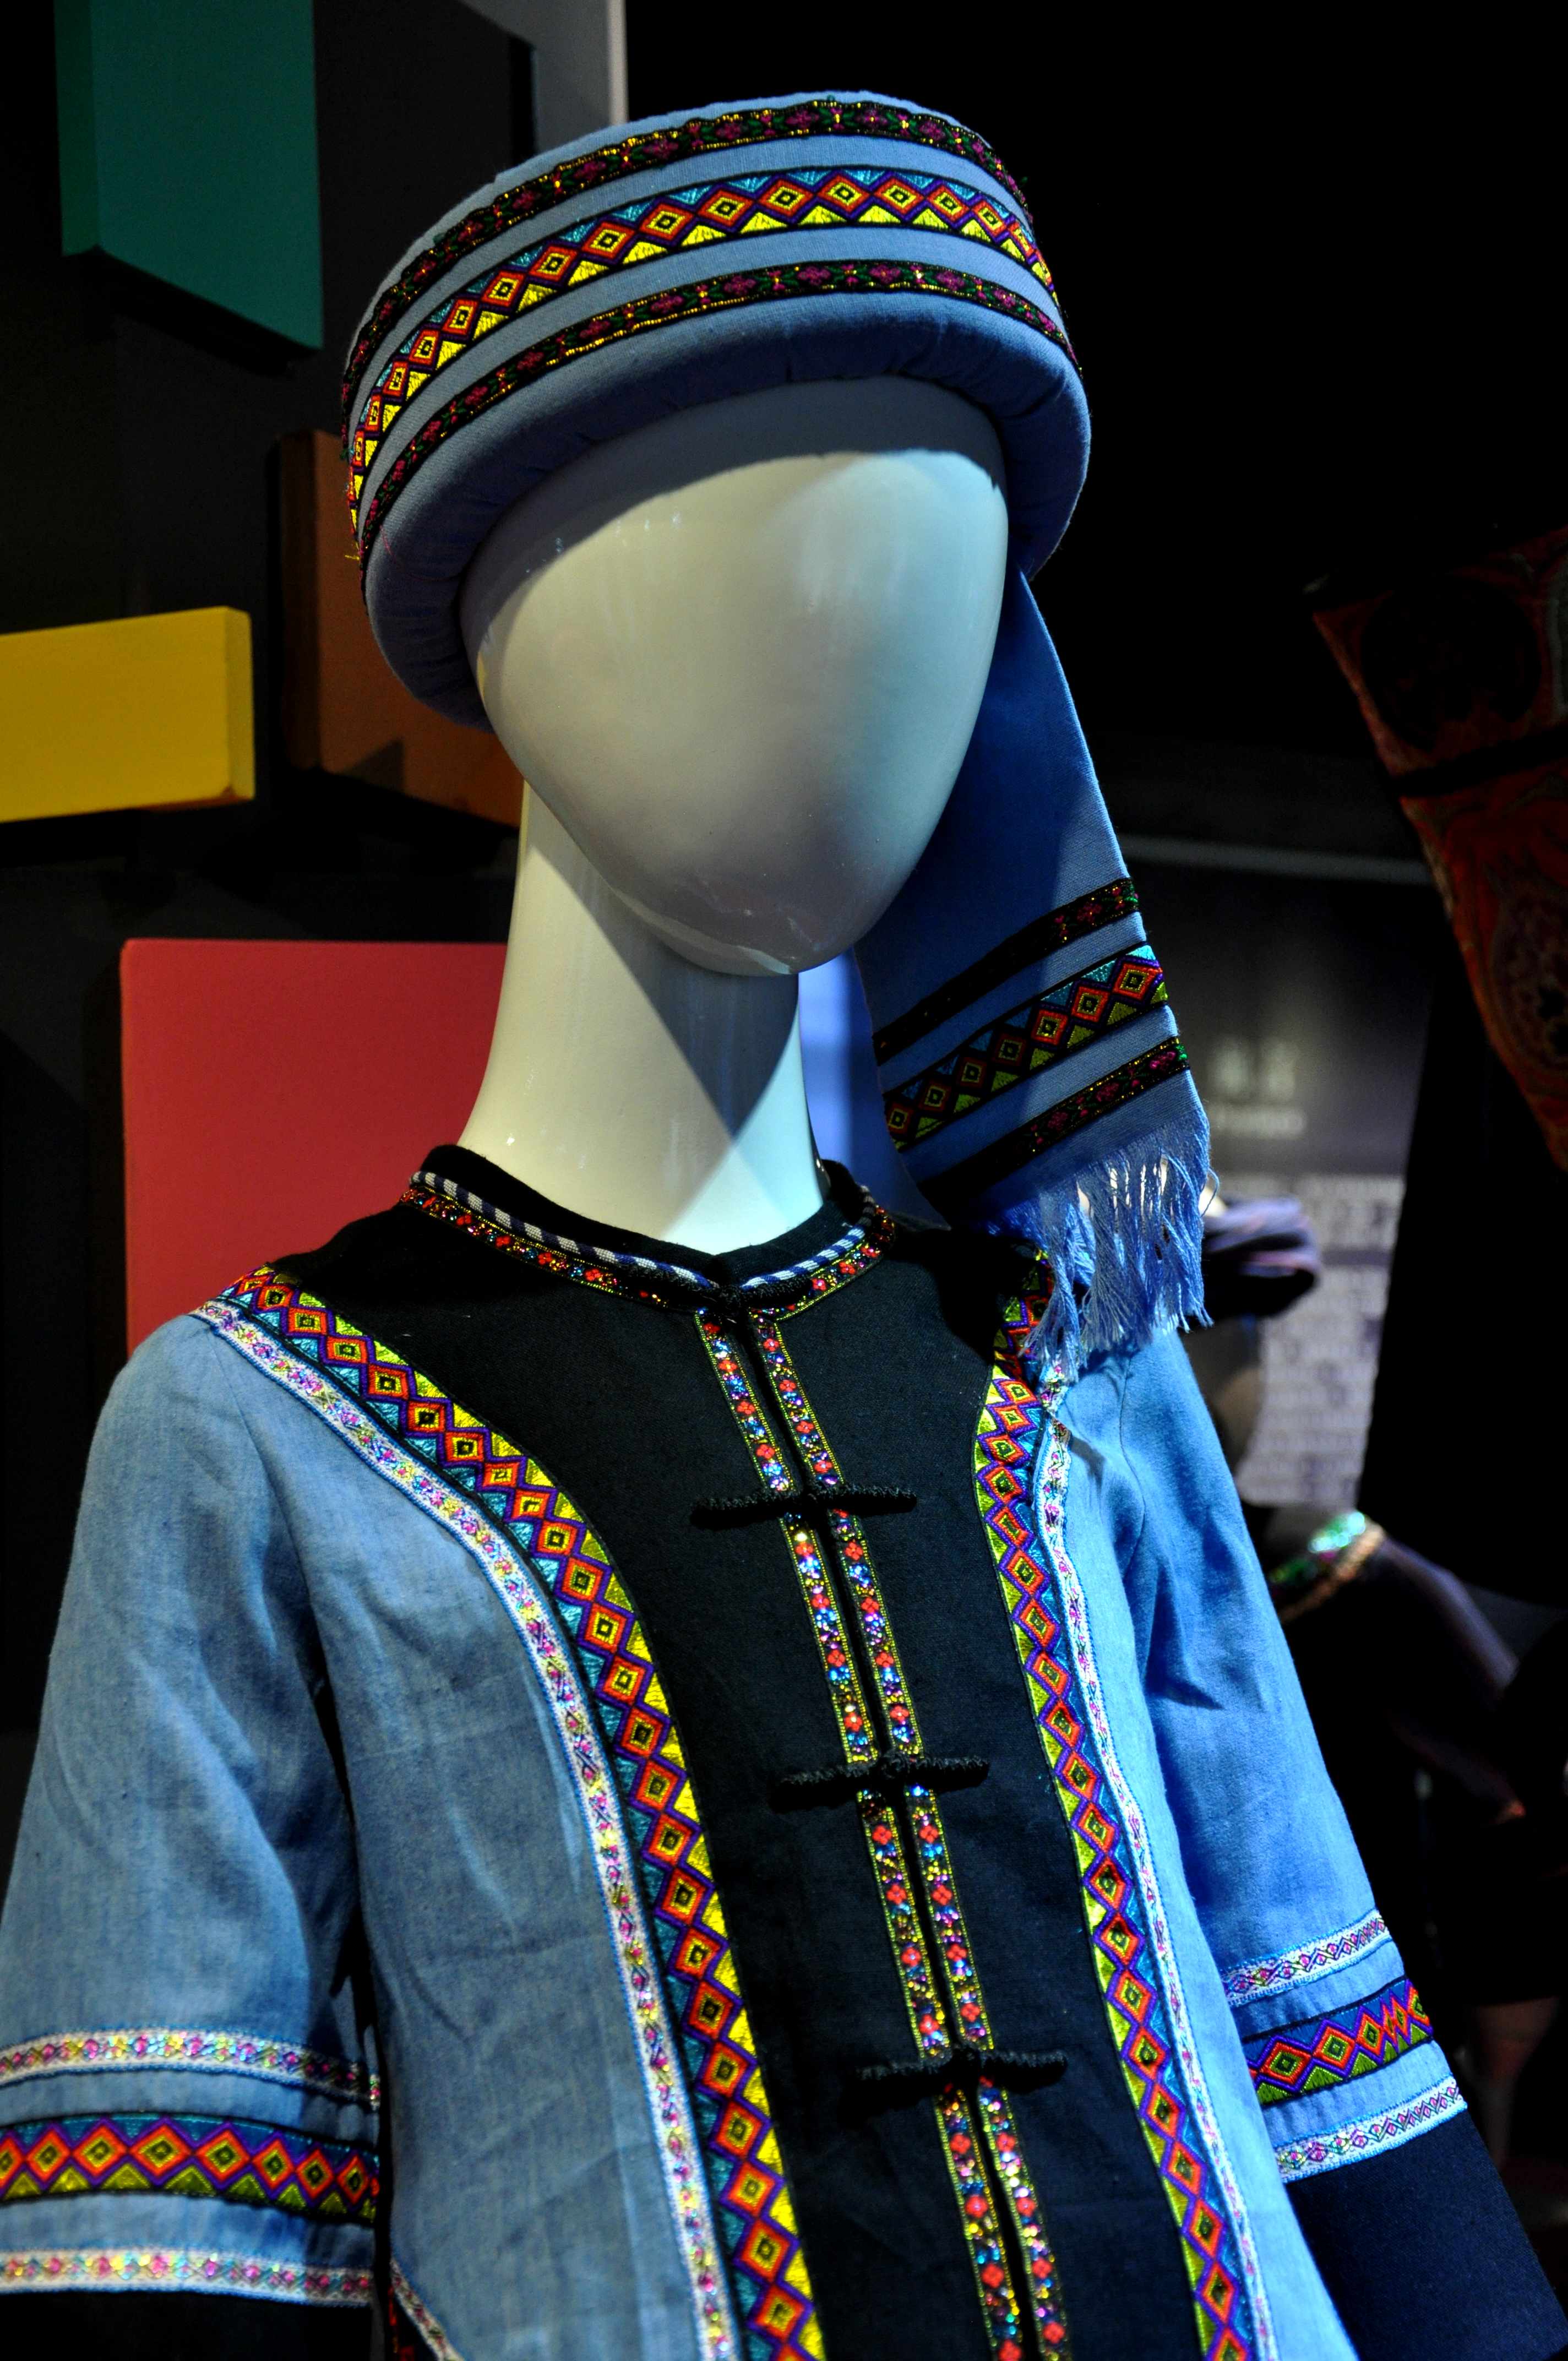 2020蒙古族服装服饰设计大赛 ᠮᠣᠩᠭᠤᠯ ᠦᠨᠳᠦᠰᠦᠲᠡᠨ ᠦ᠌ ᠬᠤᠪᠴᠠᠰᠤ ᠵᠠᠰᠠᠯ ᠤ᠋ᠨ ᠤᠷᠤᠯᠳᠤᠭᠠᠨ-草原元素---蒙古元素 Mongolia Elements